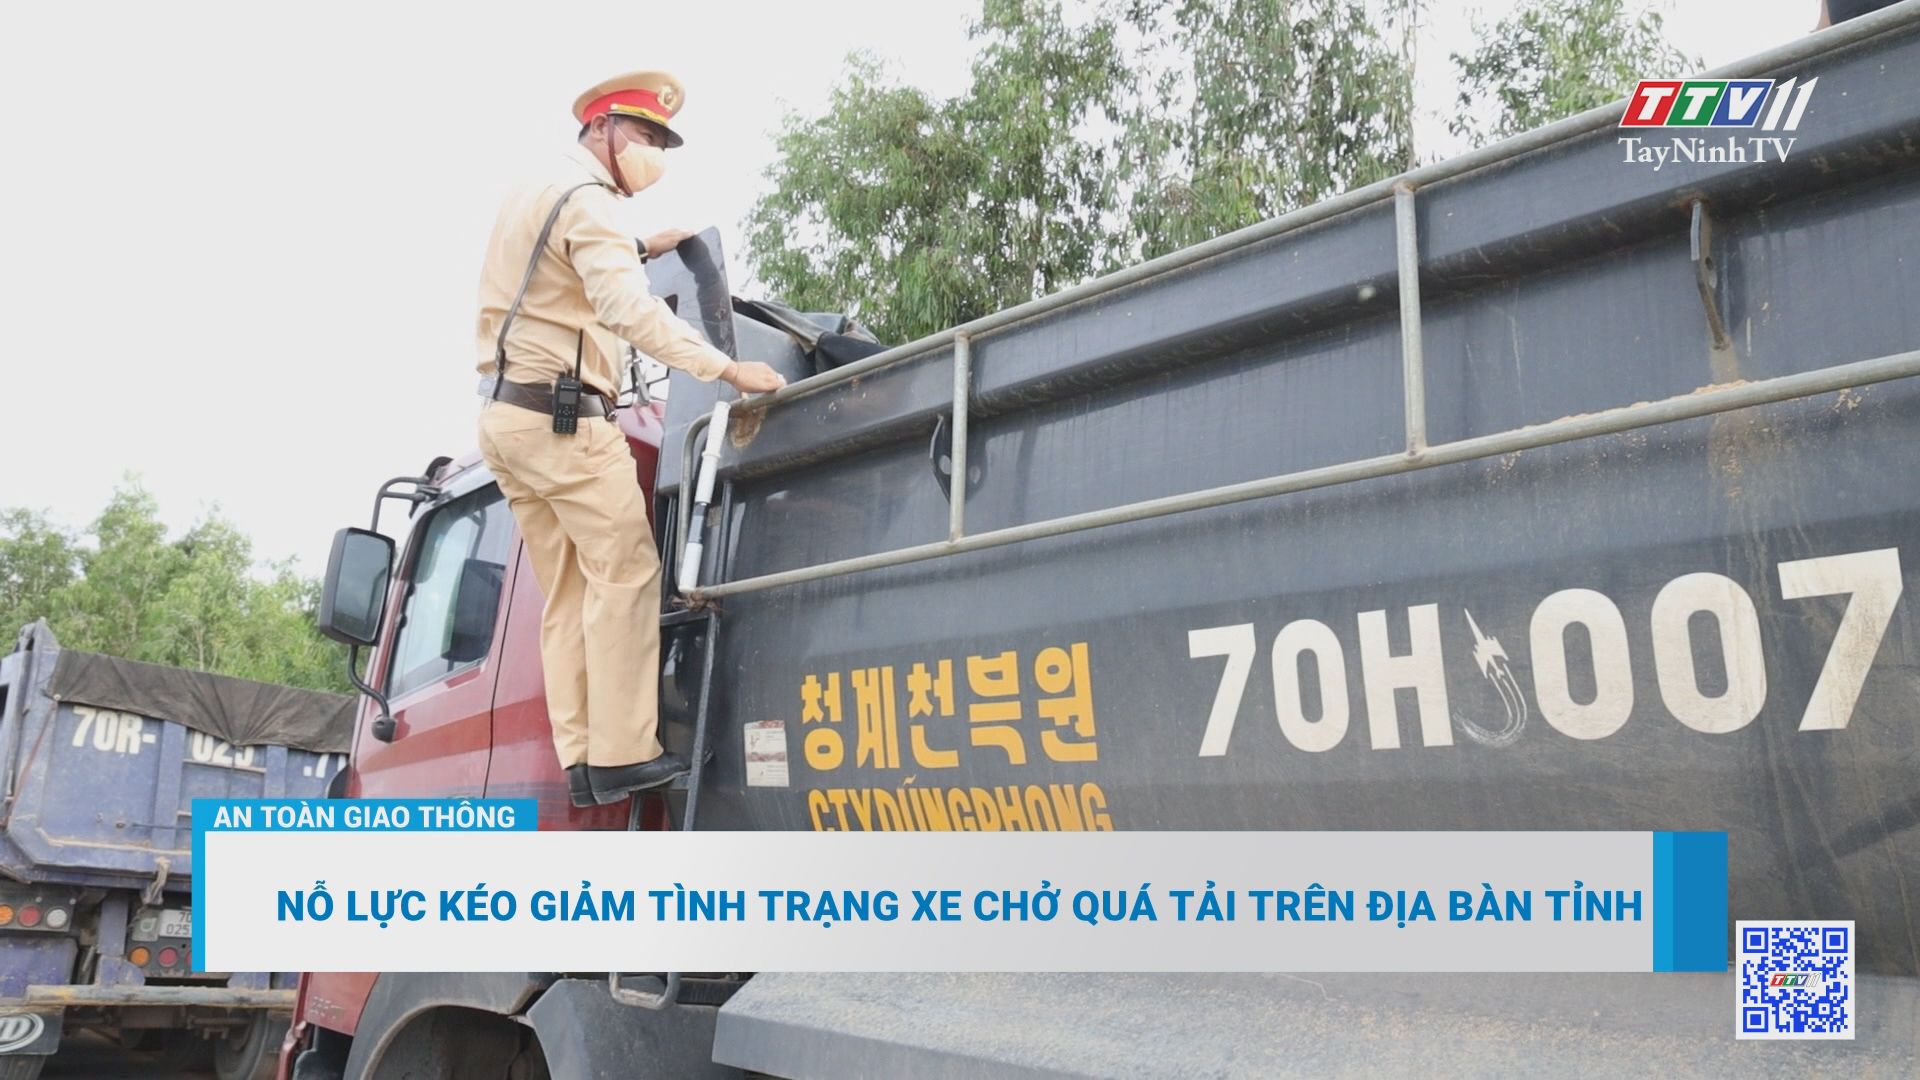 Nỗ lực kéo giảm tình trạng xe chở quá tải trên địa bàn tỉnh | An toàn giao thông | TayNinhTV